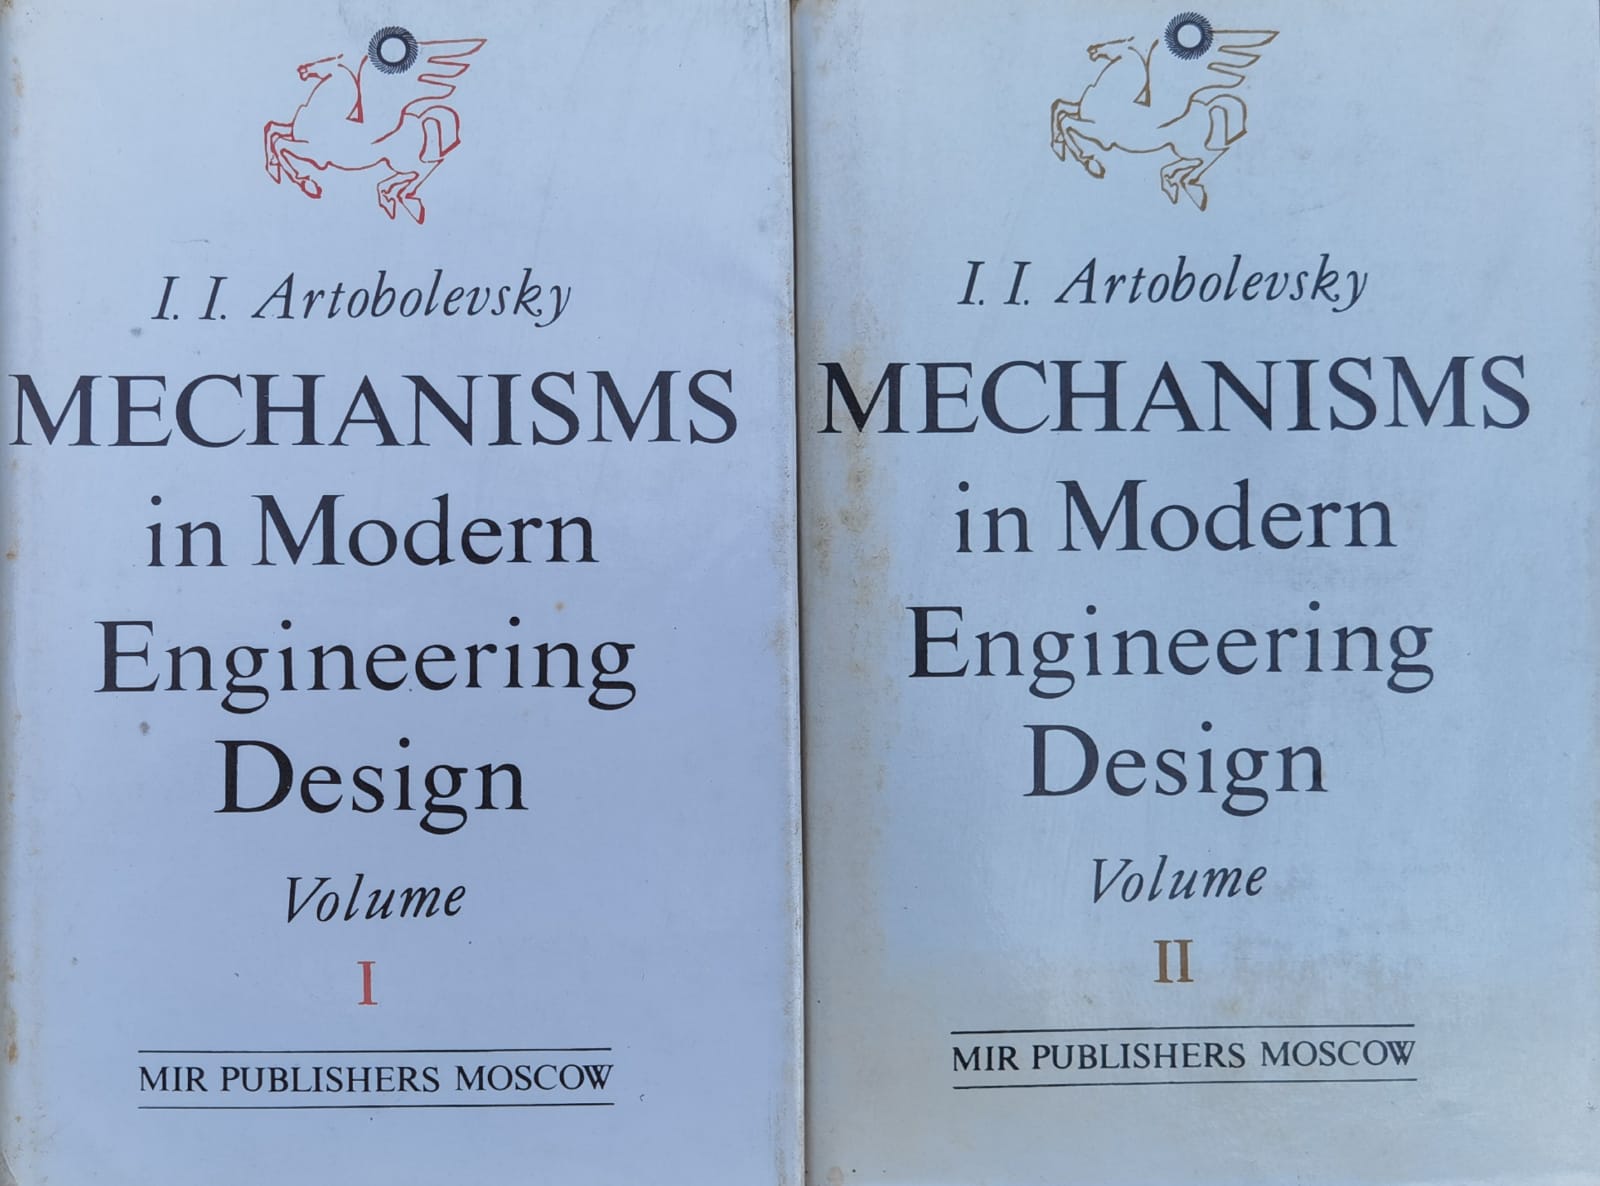 mechanisms in modern engineering design vol.1-2                                                      i. i. artobolevsky                                                                                  